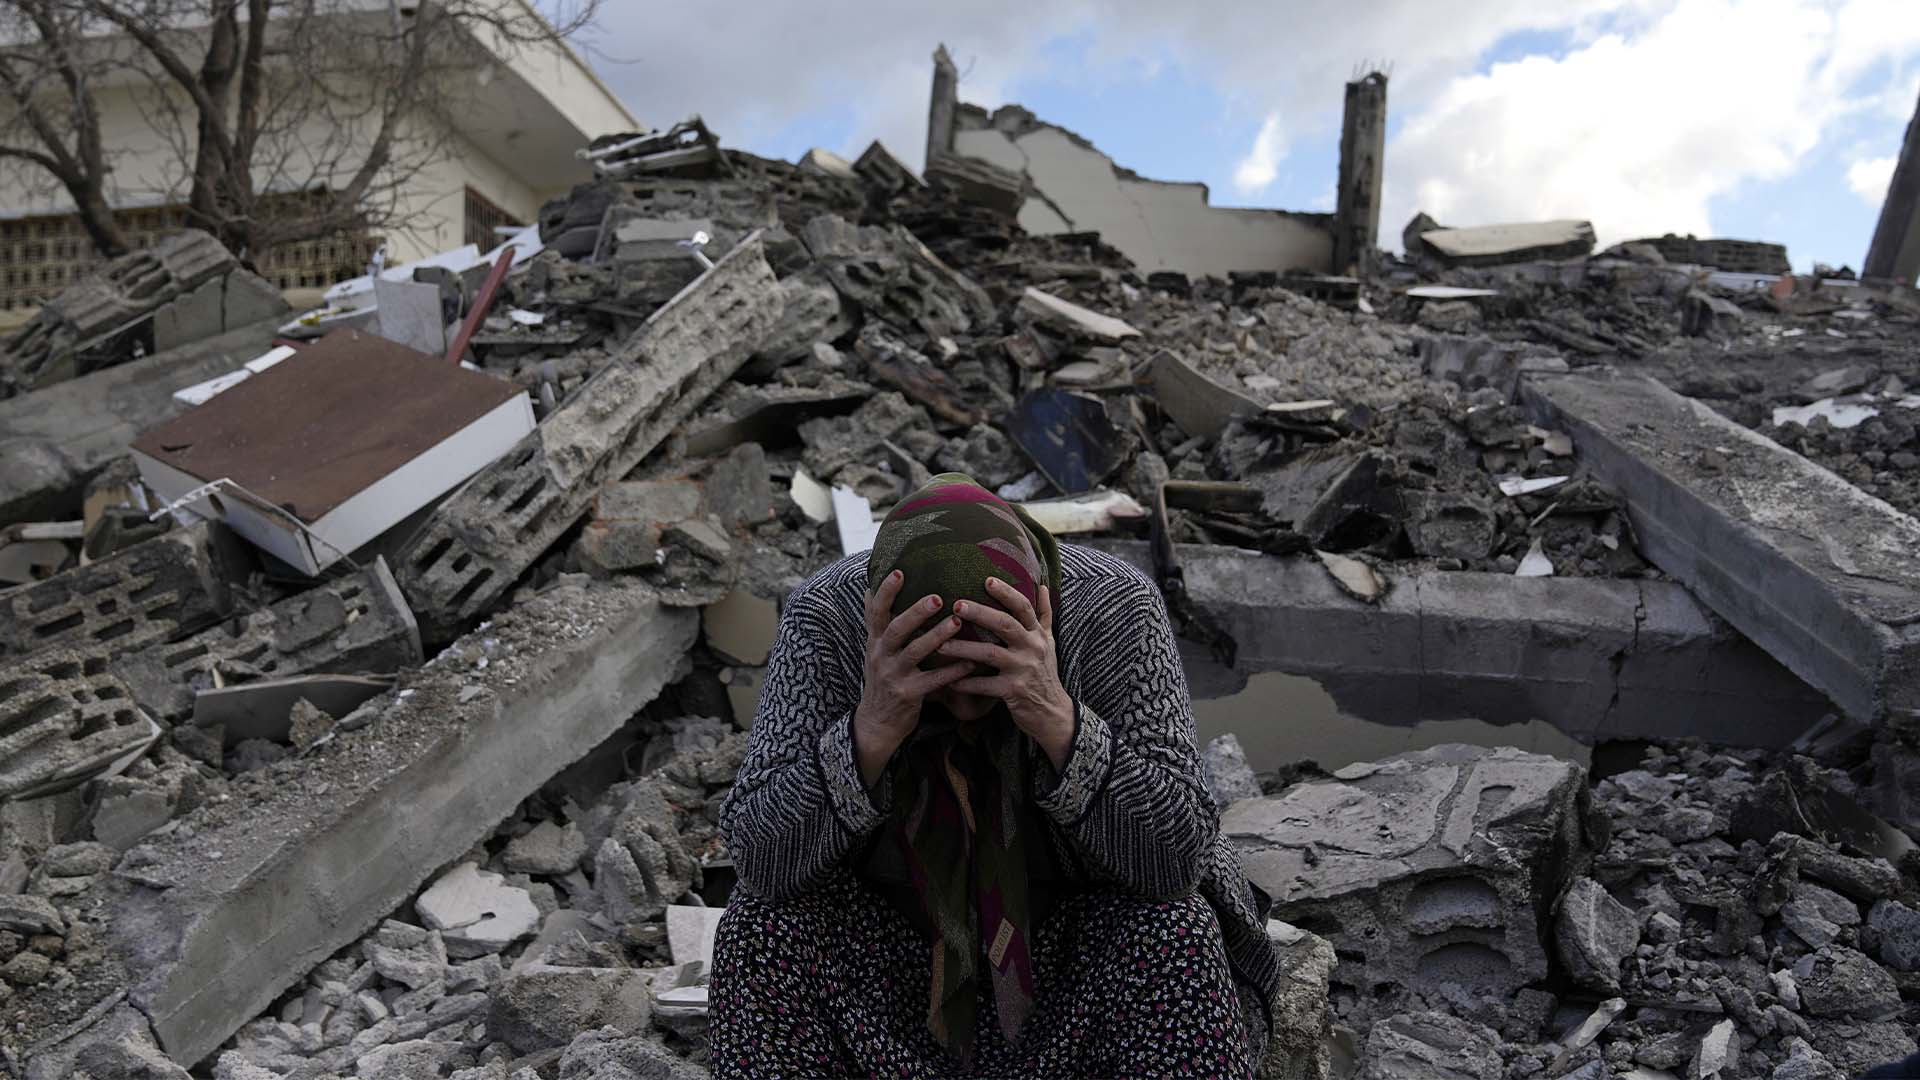 Une femme est assise sur les décombres alors que des équipes de secours d'urgence recherchent des personnes sous les restes de bâtiments détruits dans la ville de Nurdagi, à la périphérie de la ville d'Osmaniye, dans le sud de la Turquie, le mardi 7 février 2023. Un puissant tremblement de terre a frappé le sud-est de la Turquie et la Syrie tôt lundi, renversant des centaines de bâtiments et tuant et blessant des milliers de personnes. 